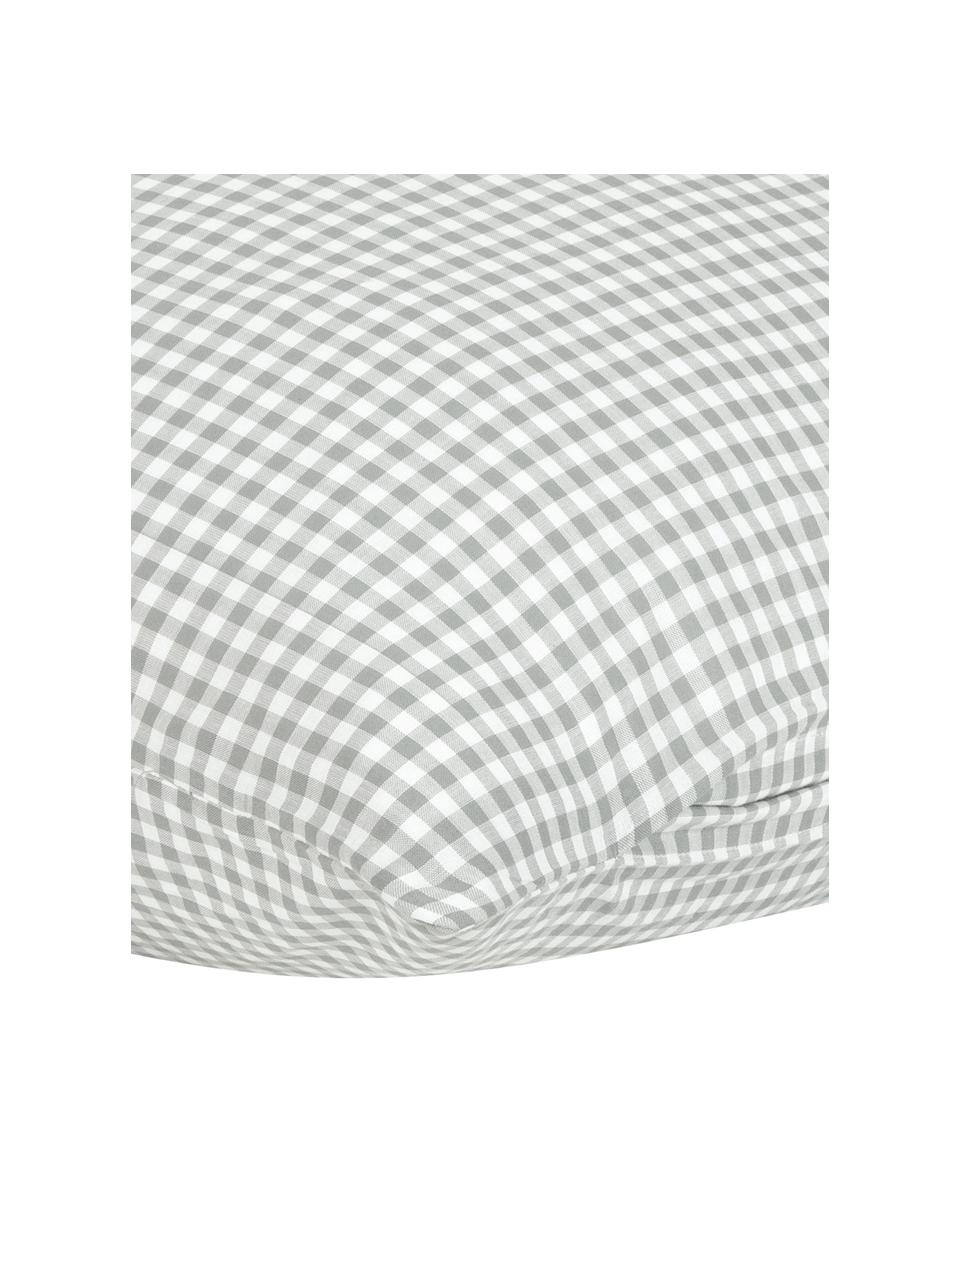 Károvaný bavlněný povlak na polštář Scotty, 2 ks, 100 % bavlna
Hustota tkaniny 118 TC, standardní gramáž
Bavlněné povlečení je měkké na dotek , dobře absorbuje vlhkost a je vhodné pro alergiky, Světle šedá/bílá, Š 40 cm, D 80 cm